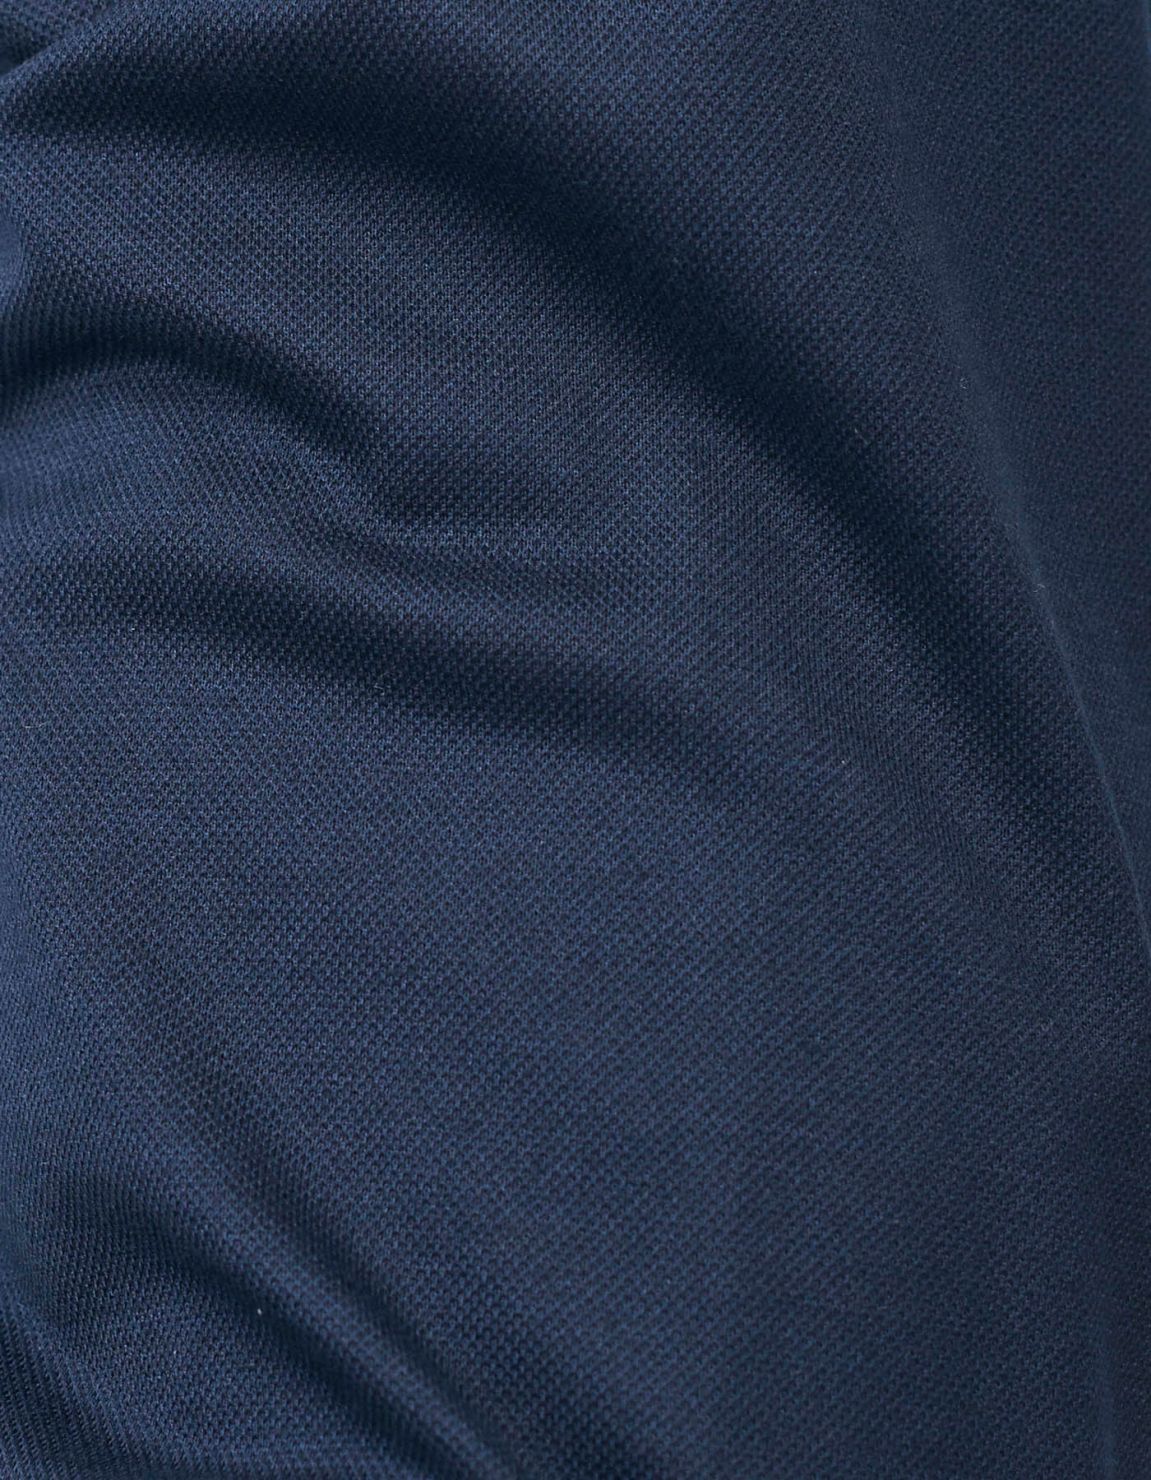 Shirt Collar cutaway Blue Piquet Tailor Custom Fit 2